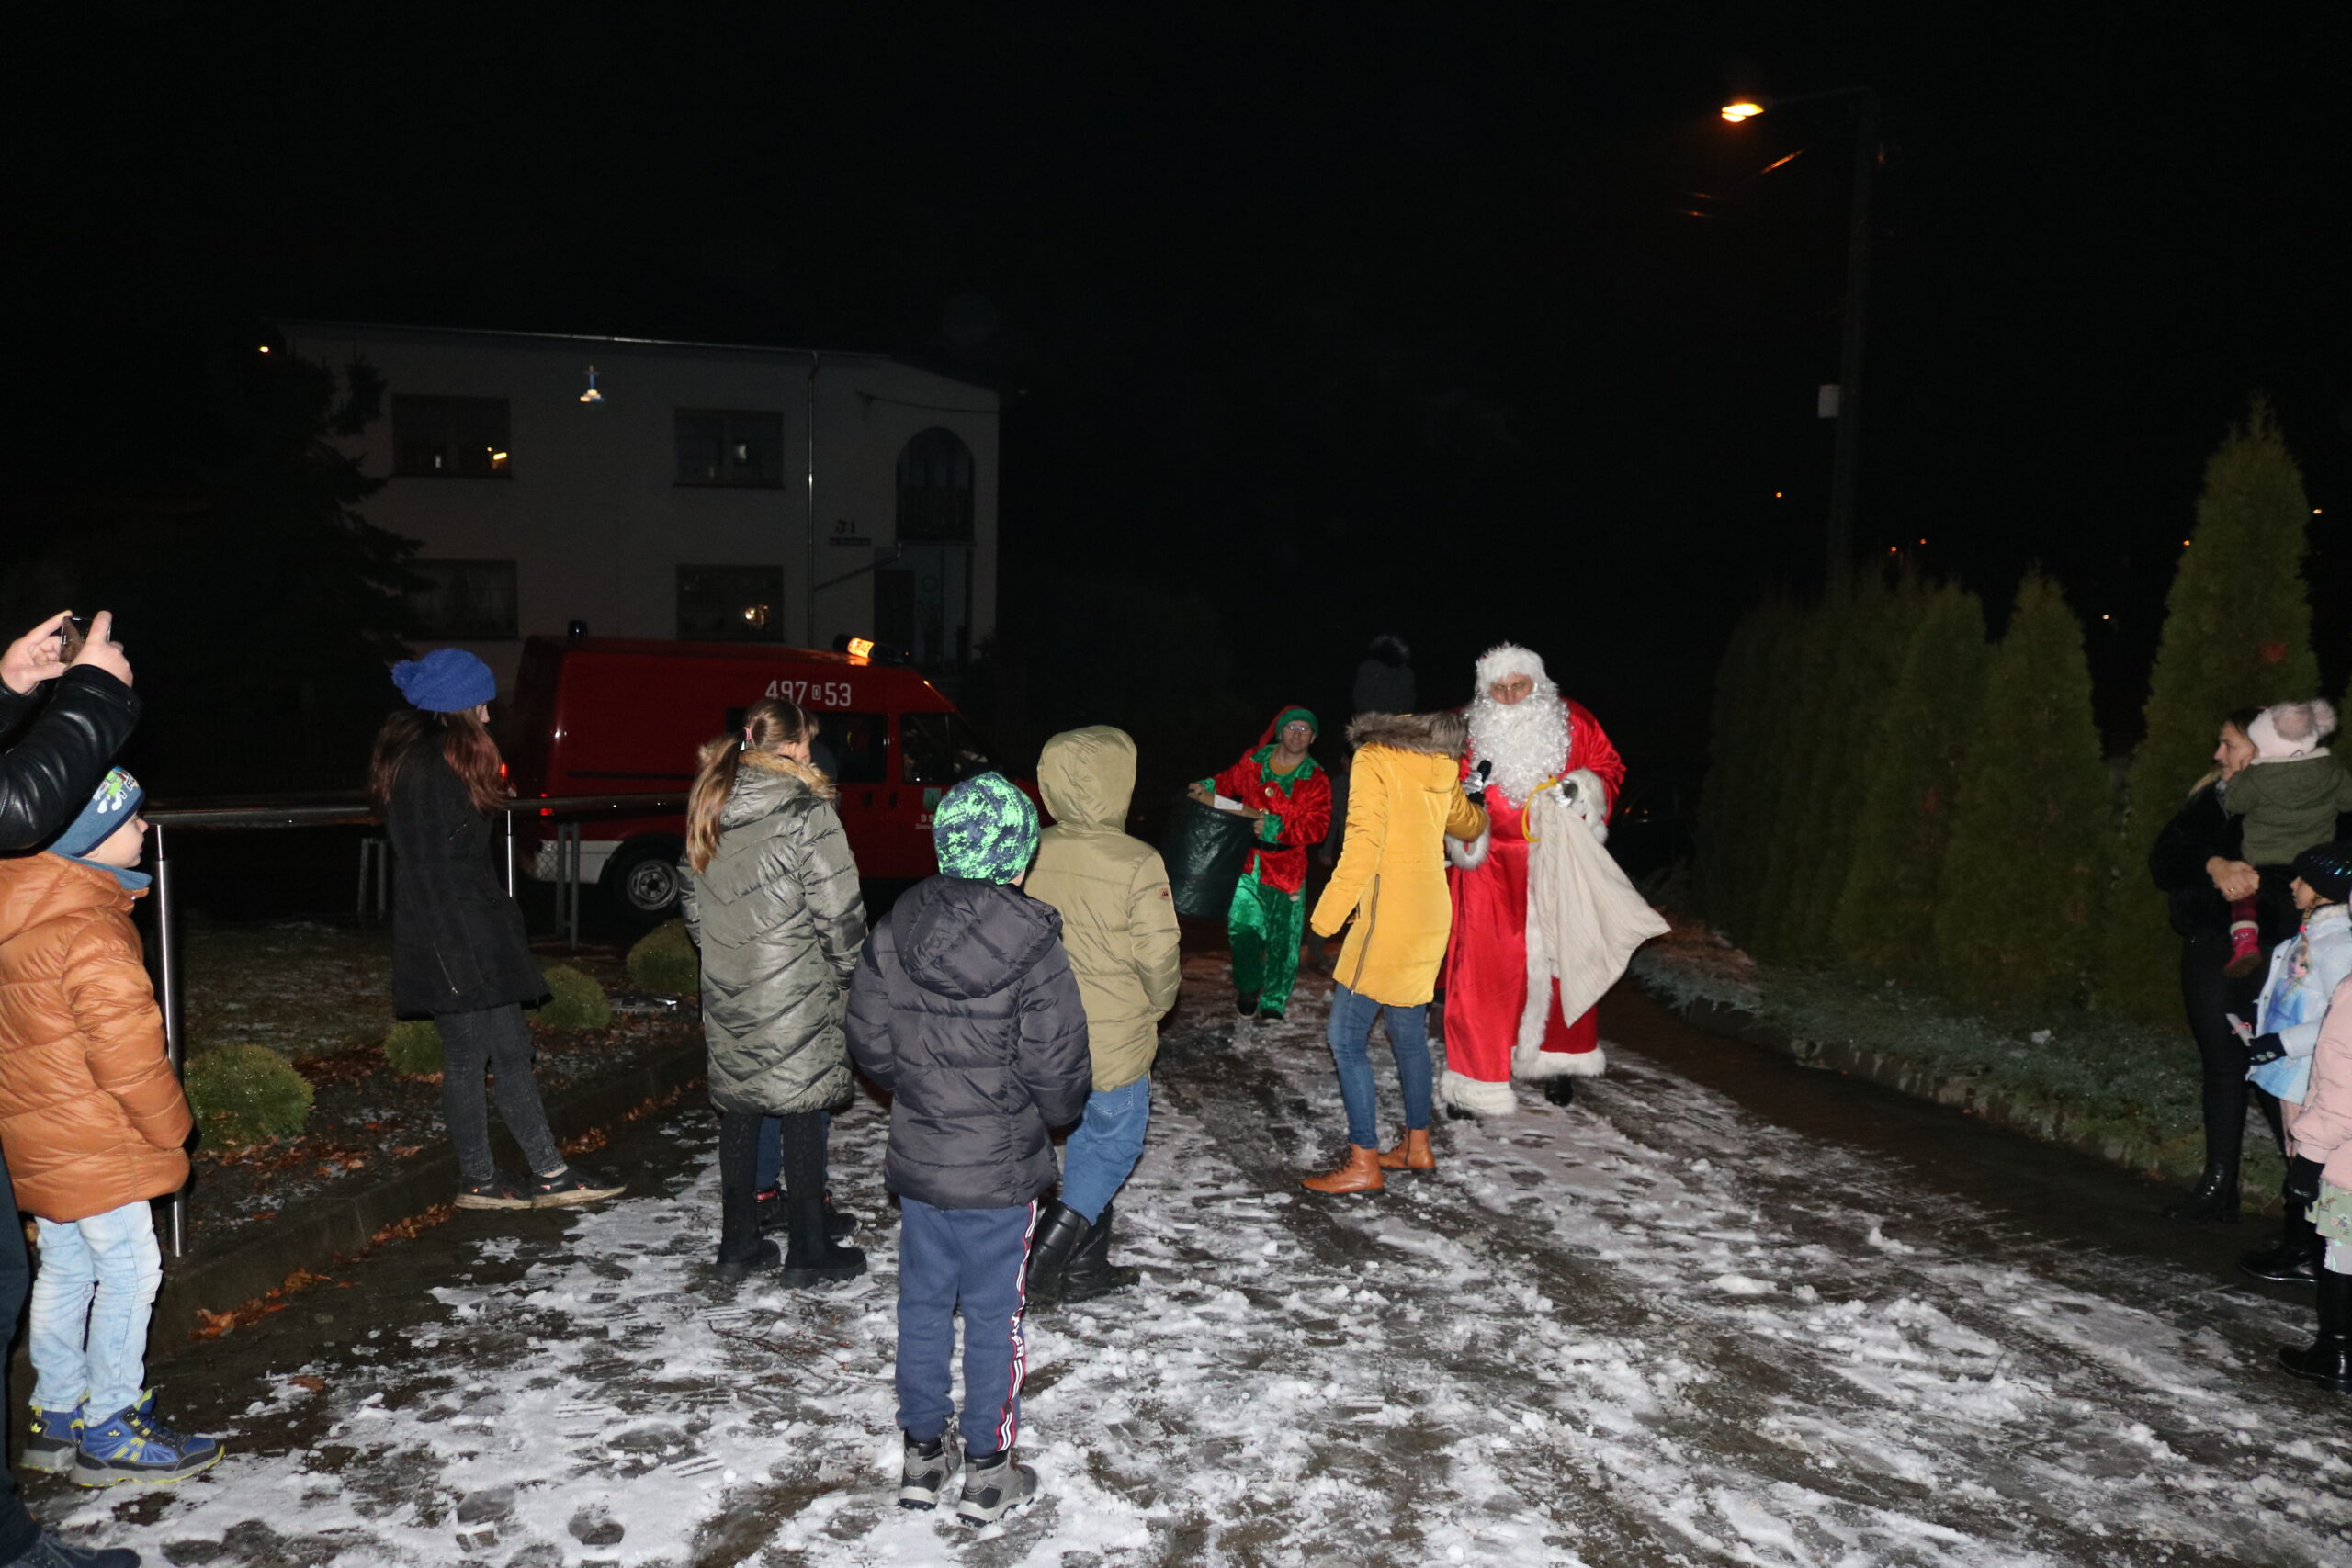 Spotkanie z Mikołajem w Sieroniowicach